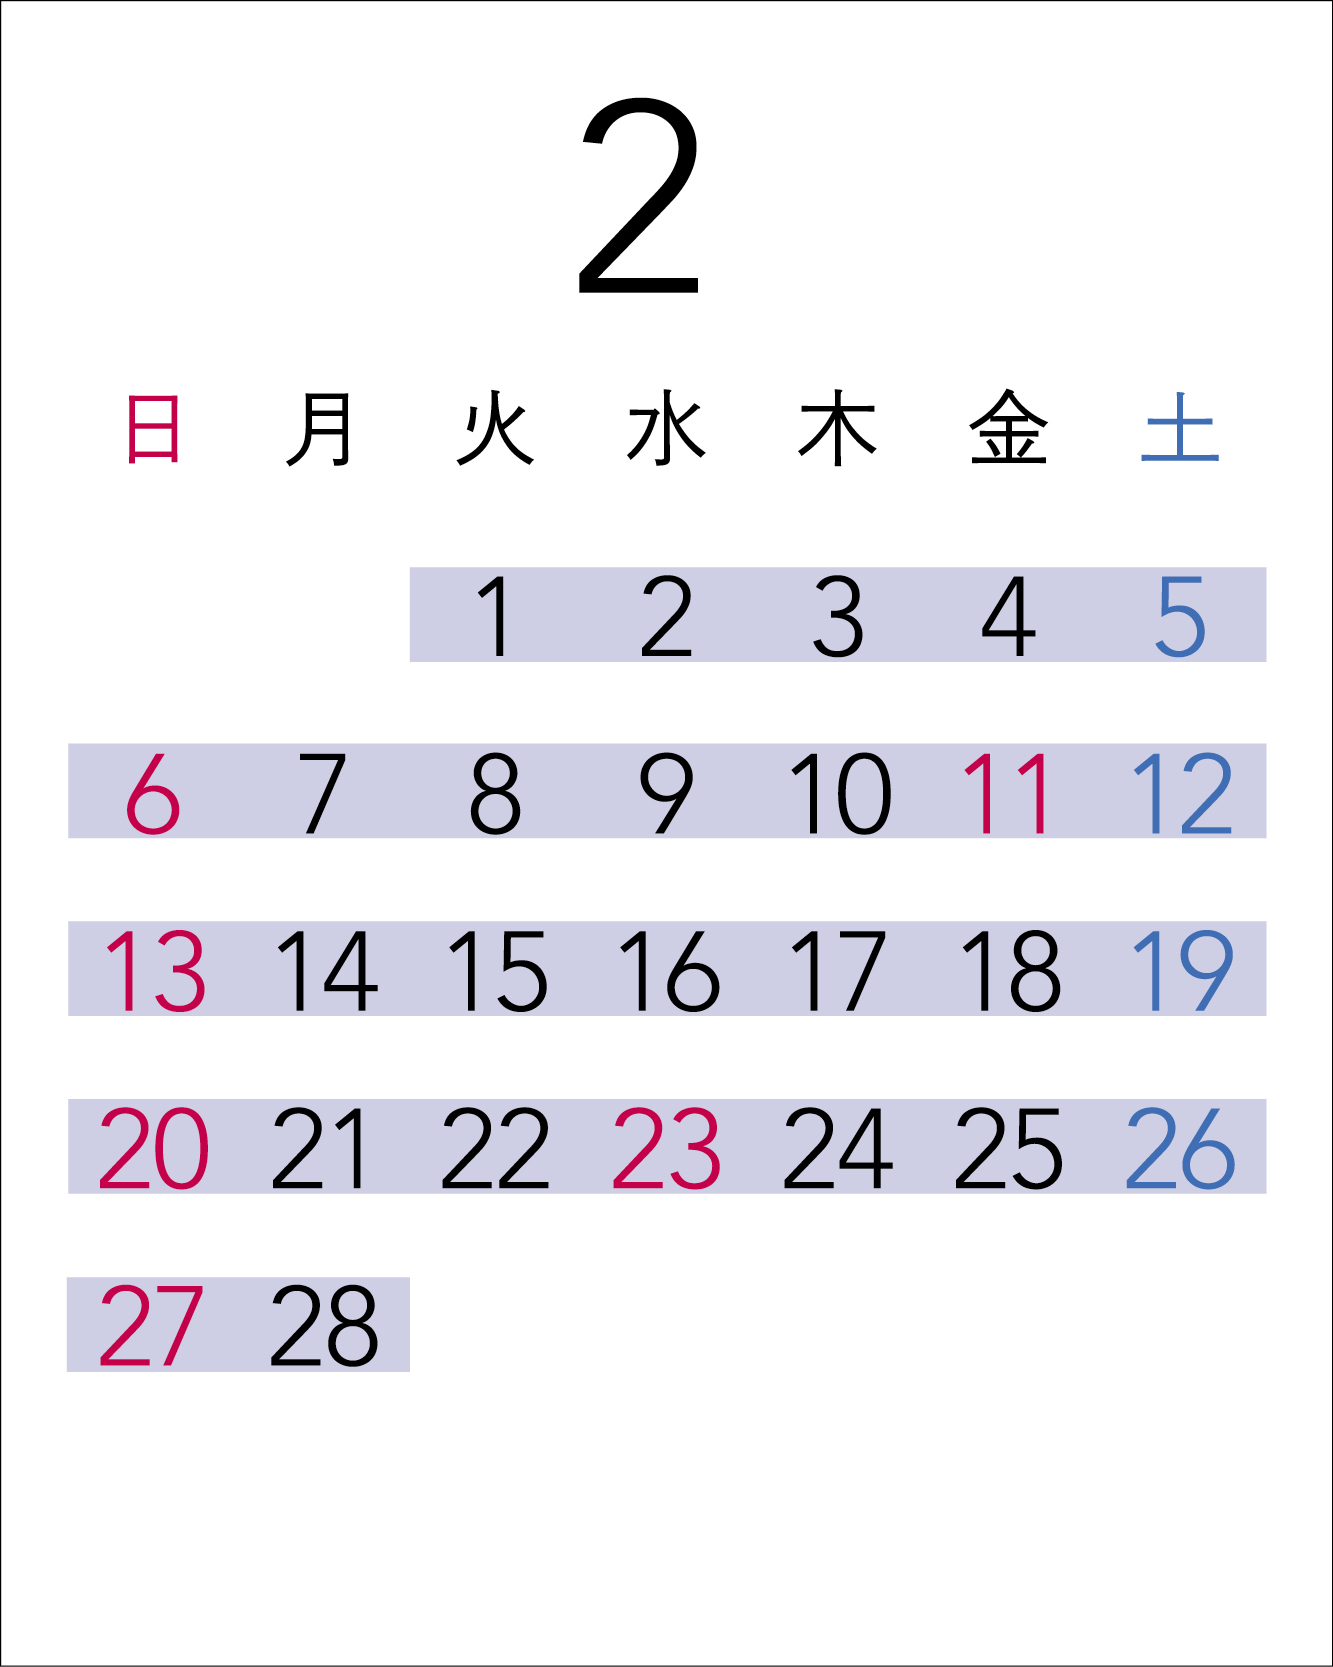 Calendar in February